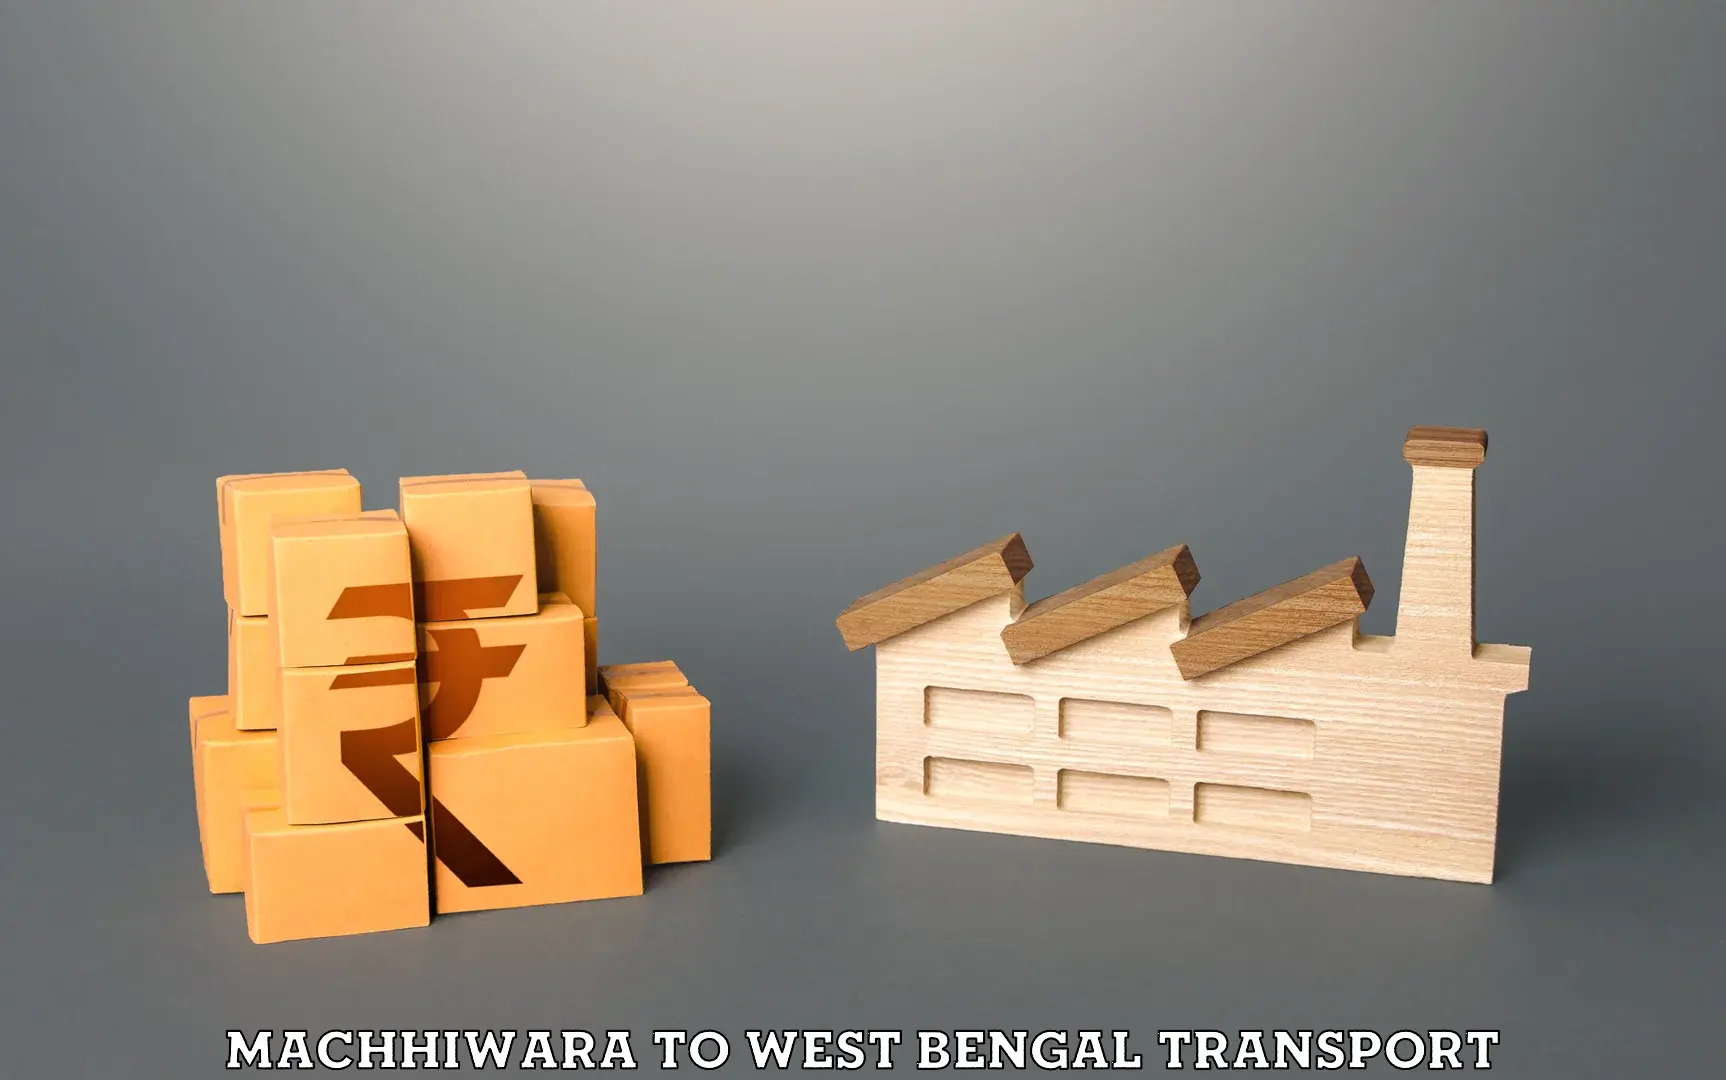 Furniture transport service Machhiwara to West Bengal